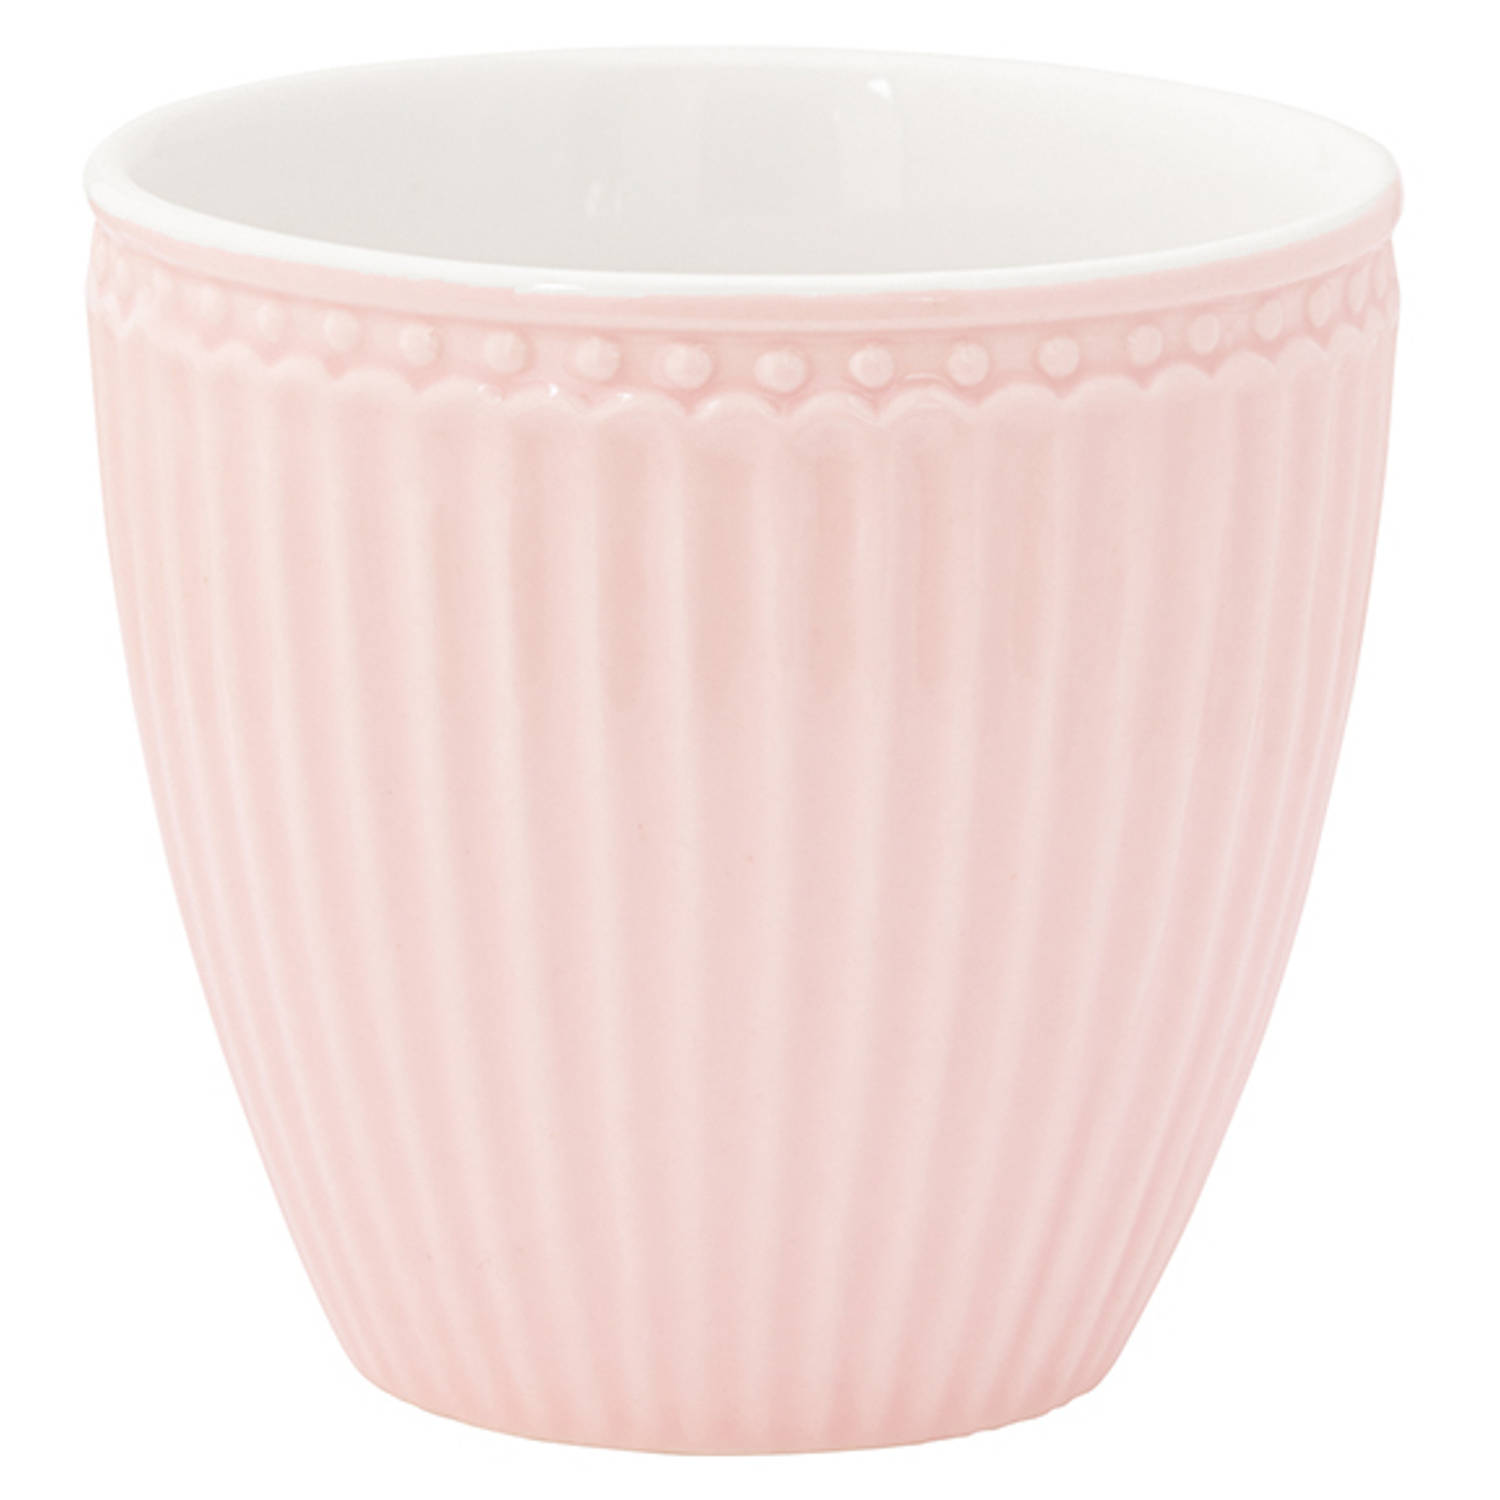 GreenGate beker (latte cup) Alice lichtroze 300 ml - Ø 10 cm